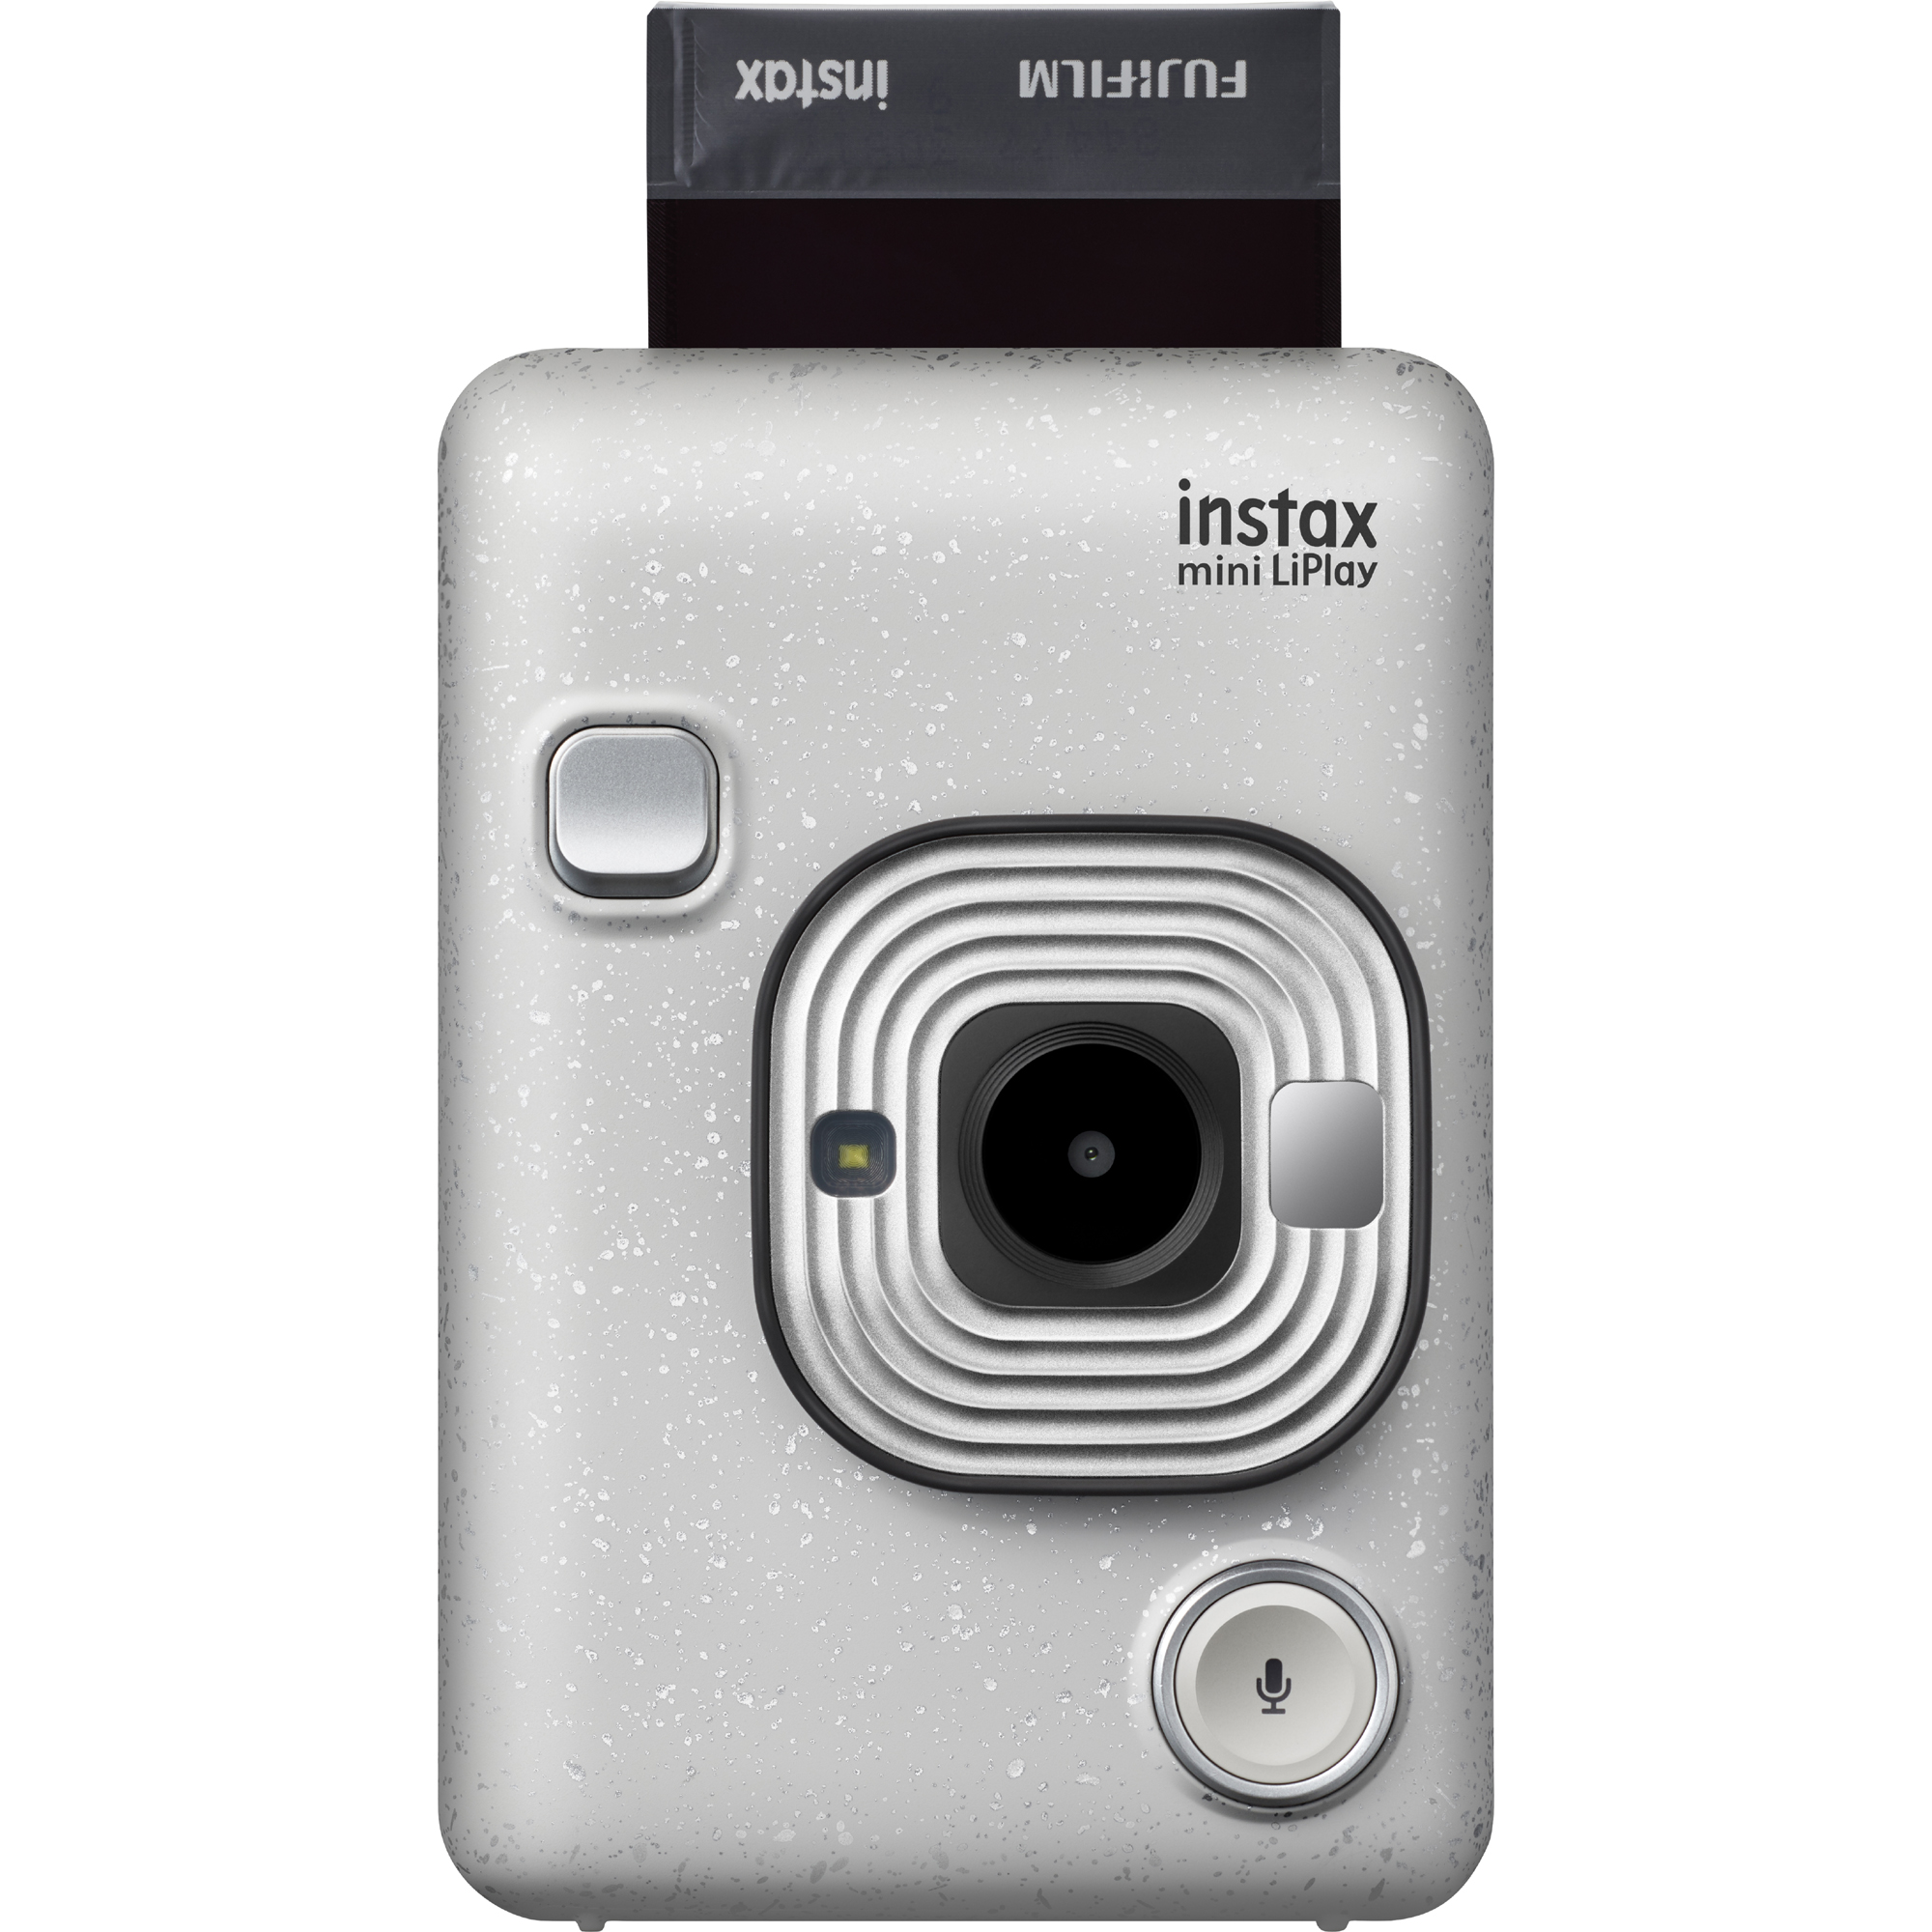 Fujifilm Instax Hybrid Mini Liplay, Stone White - image 4 of 5